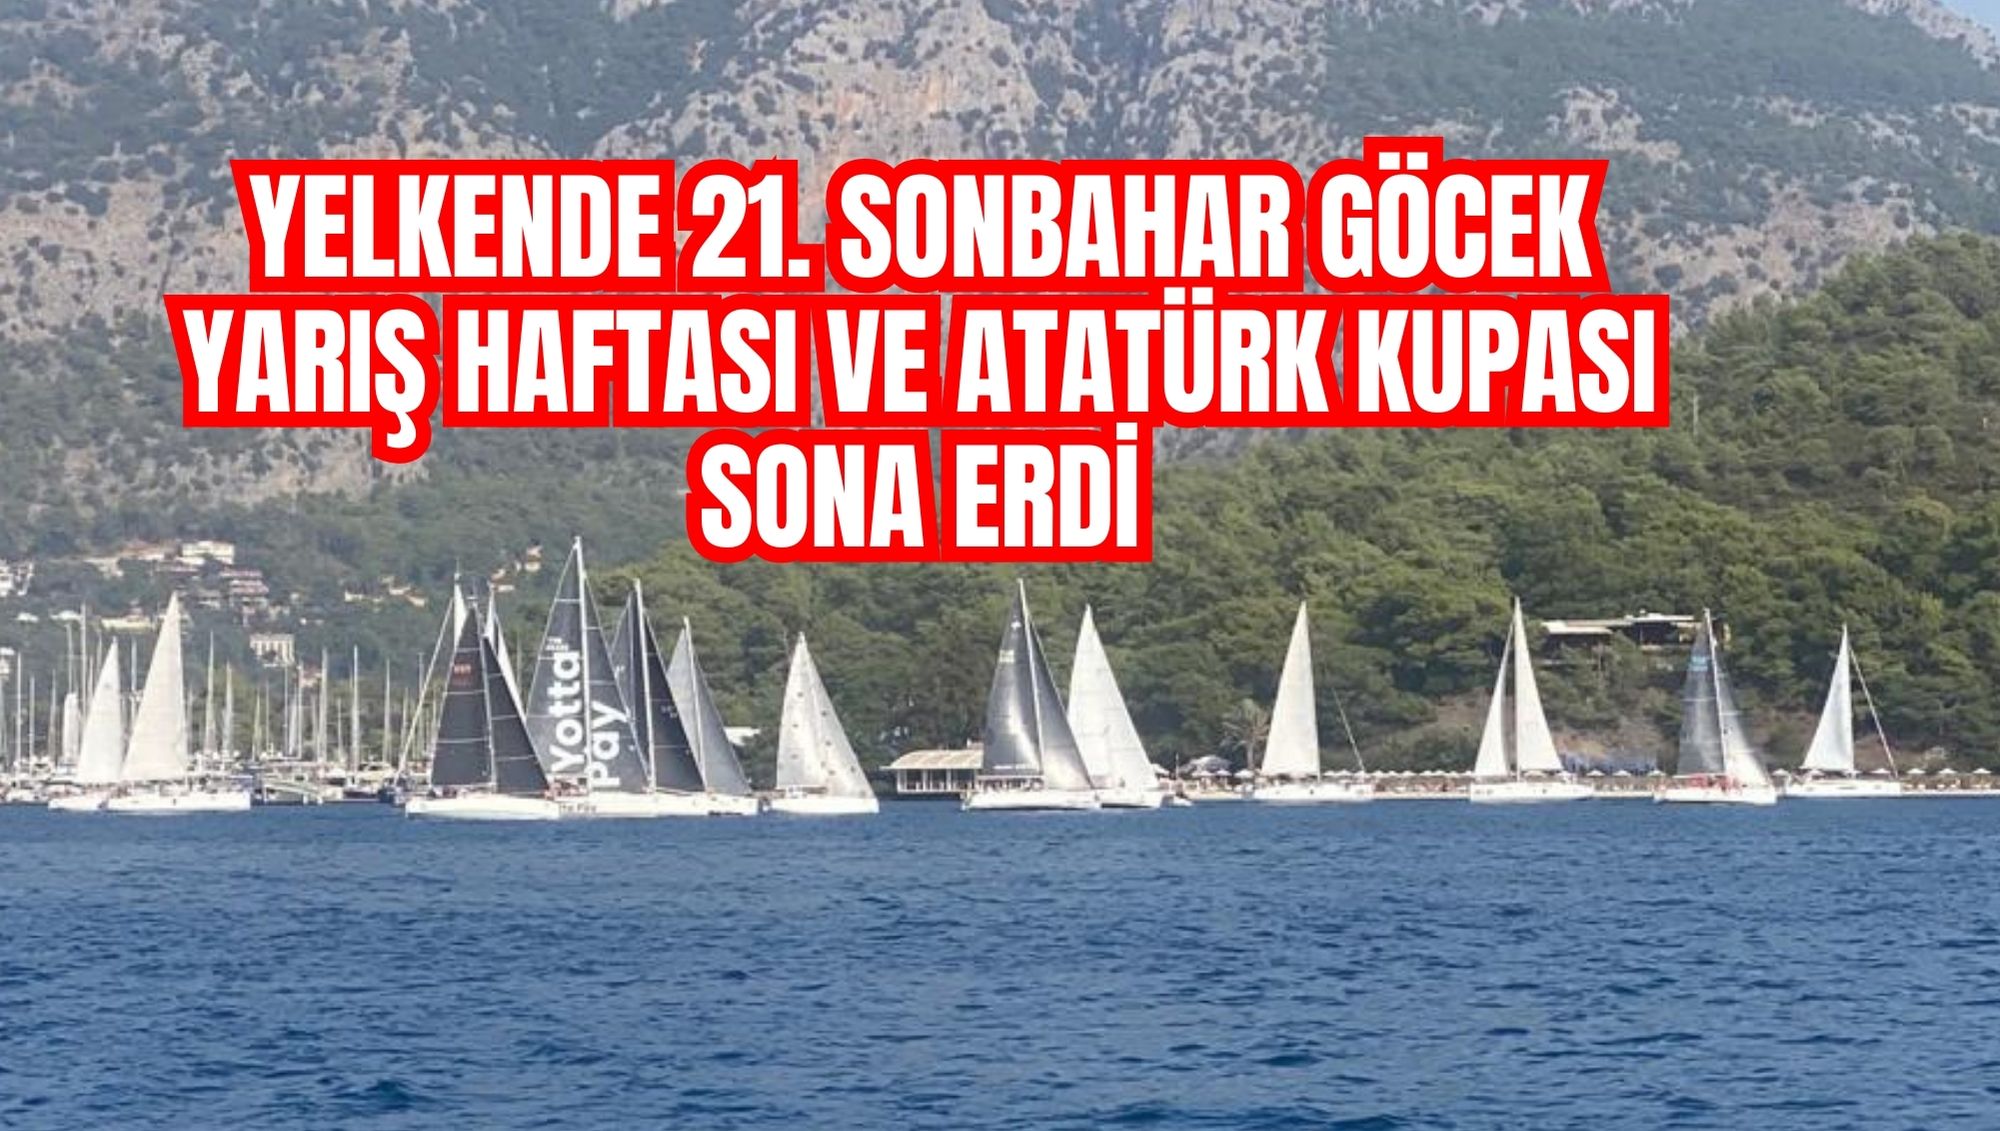 Yelkende 21. Sonbahar Göcek Yarış Haftası ve Atatürk Kupası sona erdi